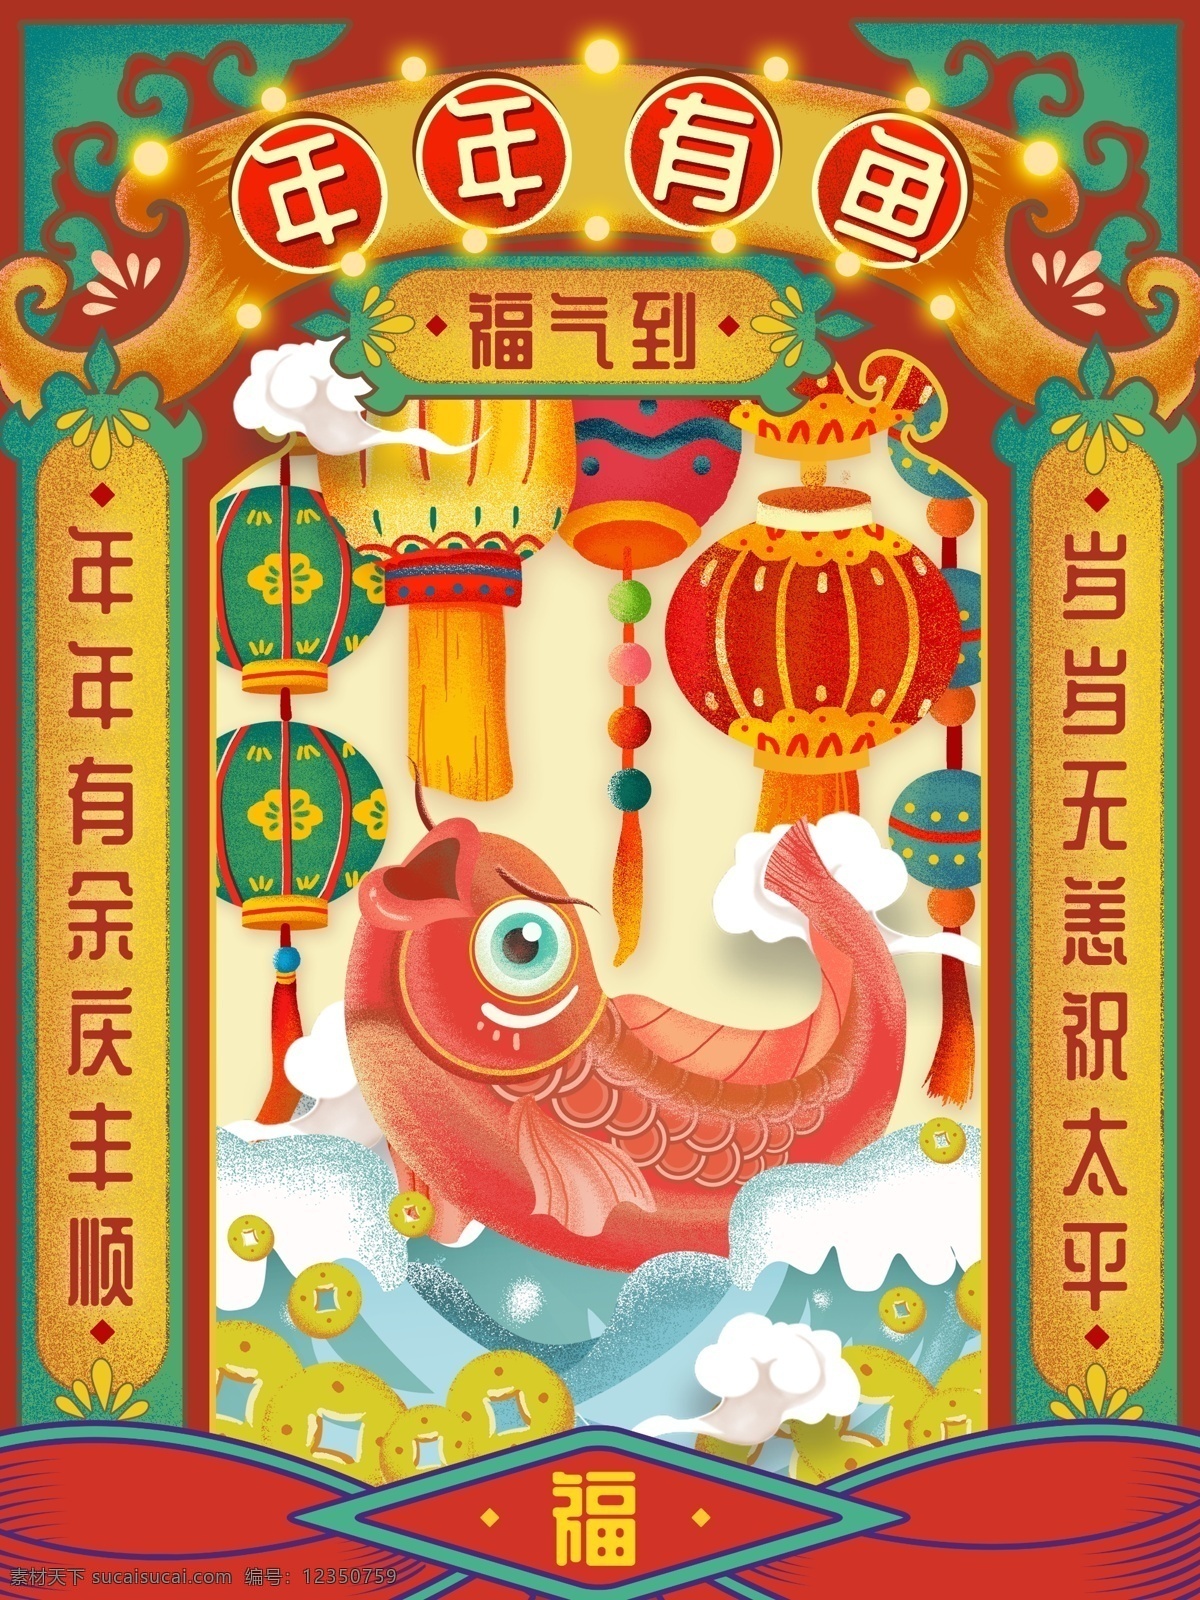 原创 手绘 中国 风 年年 鱼 春节 祝福 海报 中国风 对联 灯笼 福 复古 年年有鱼 年年有余 撞色